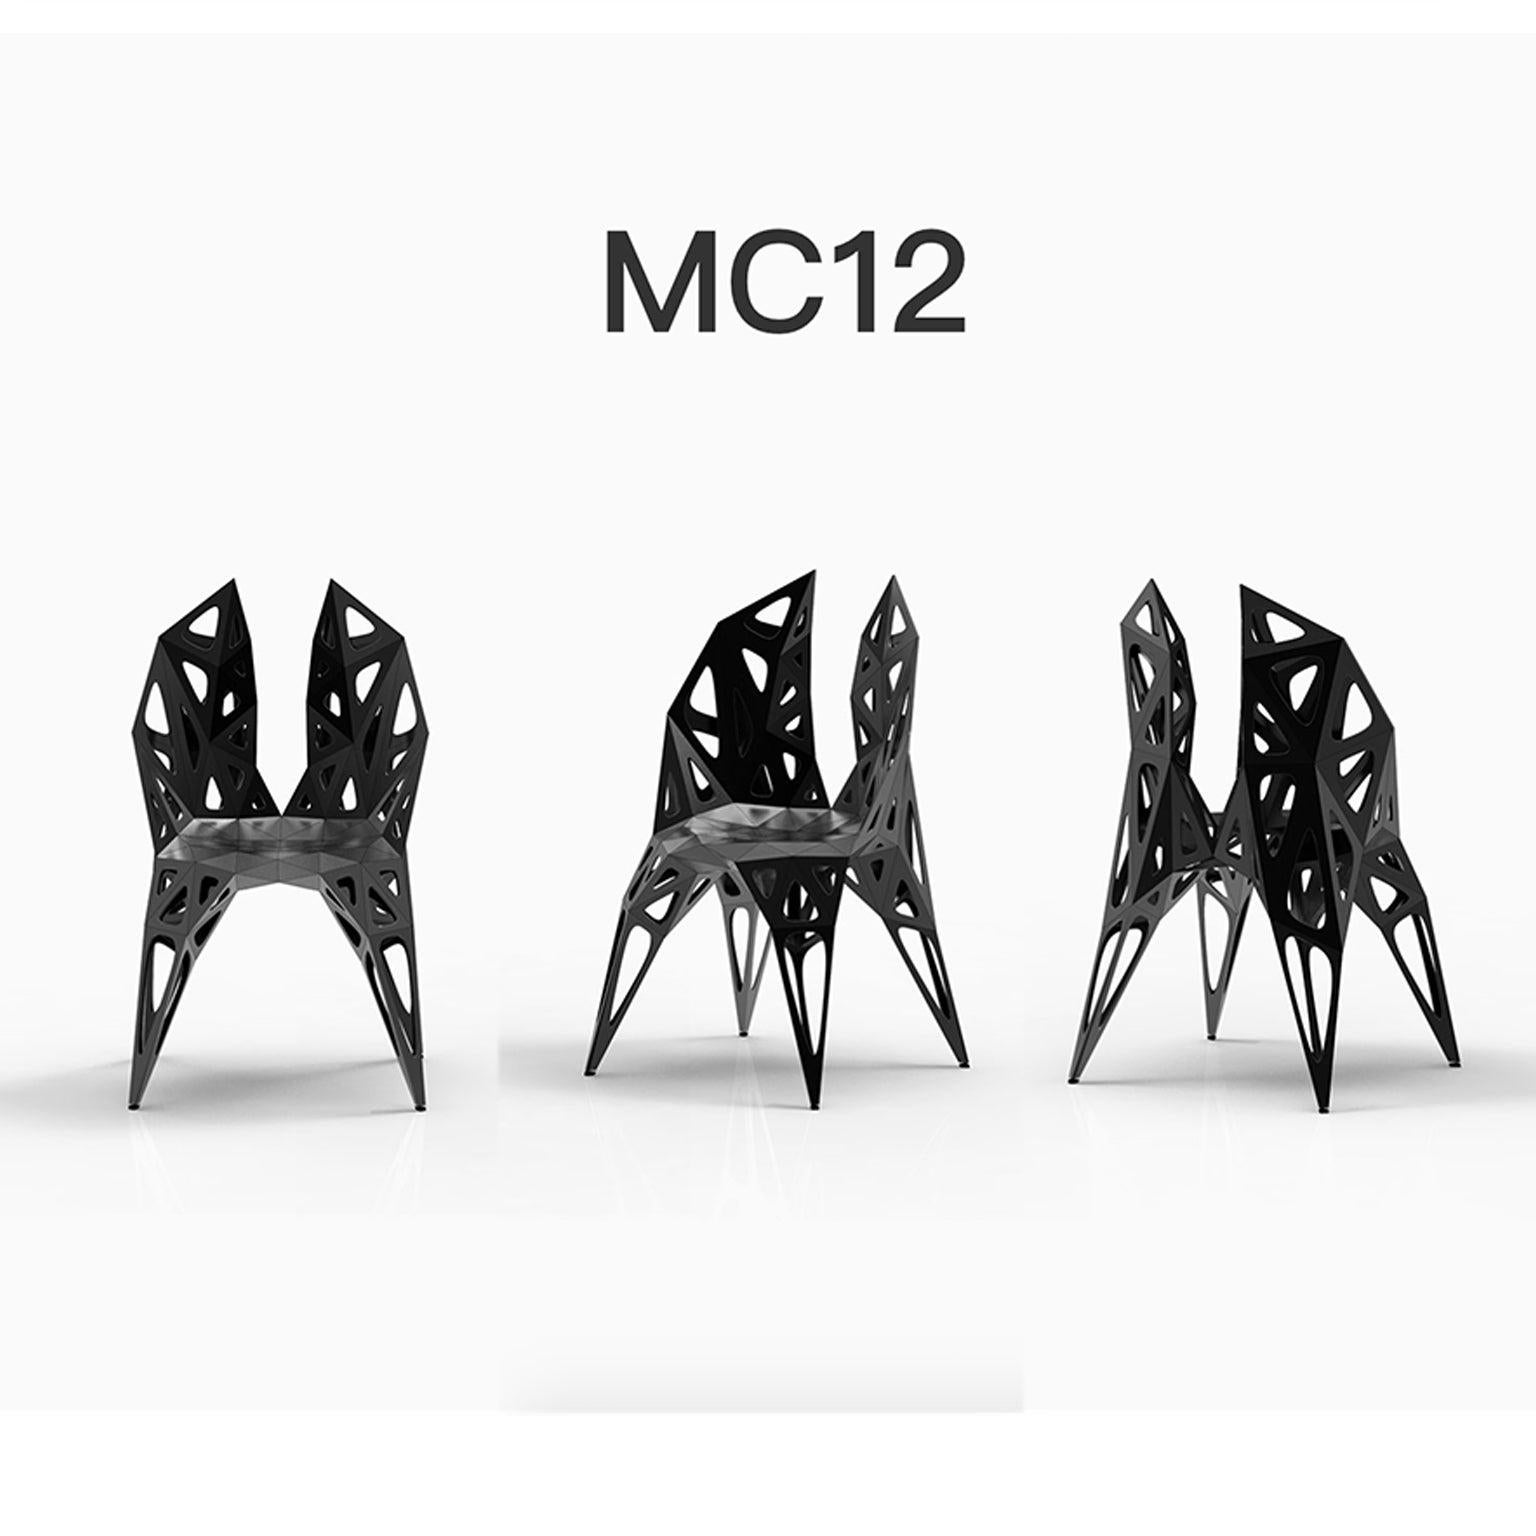 Draußen und drinnen
3 offizielle Typen von Stühlen oder verfügbar
Solide
Dots
Rahmen
2 Farben offiziell oder verfügbar oder Finish in polnisch oder matt
Schwarz
Silber

Der Möbeldesigner Zhoujie Zhang ist bekannt für die Integration von